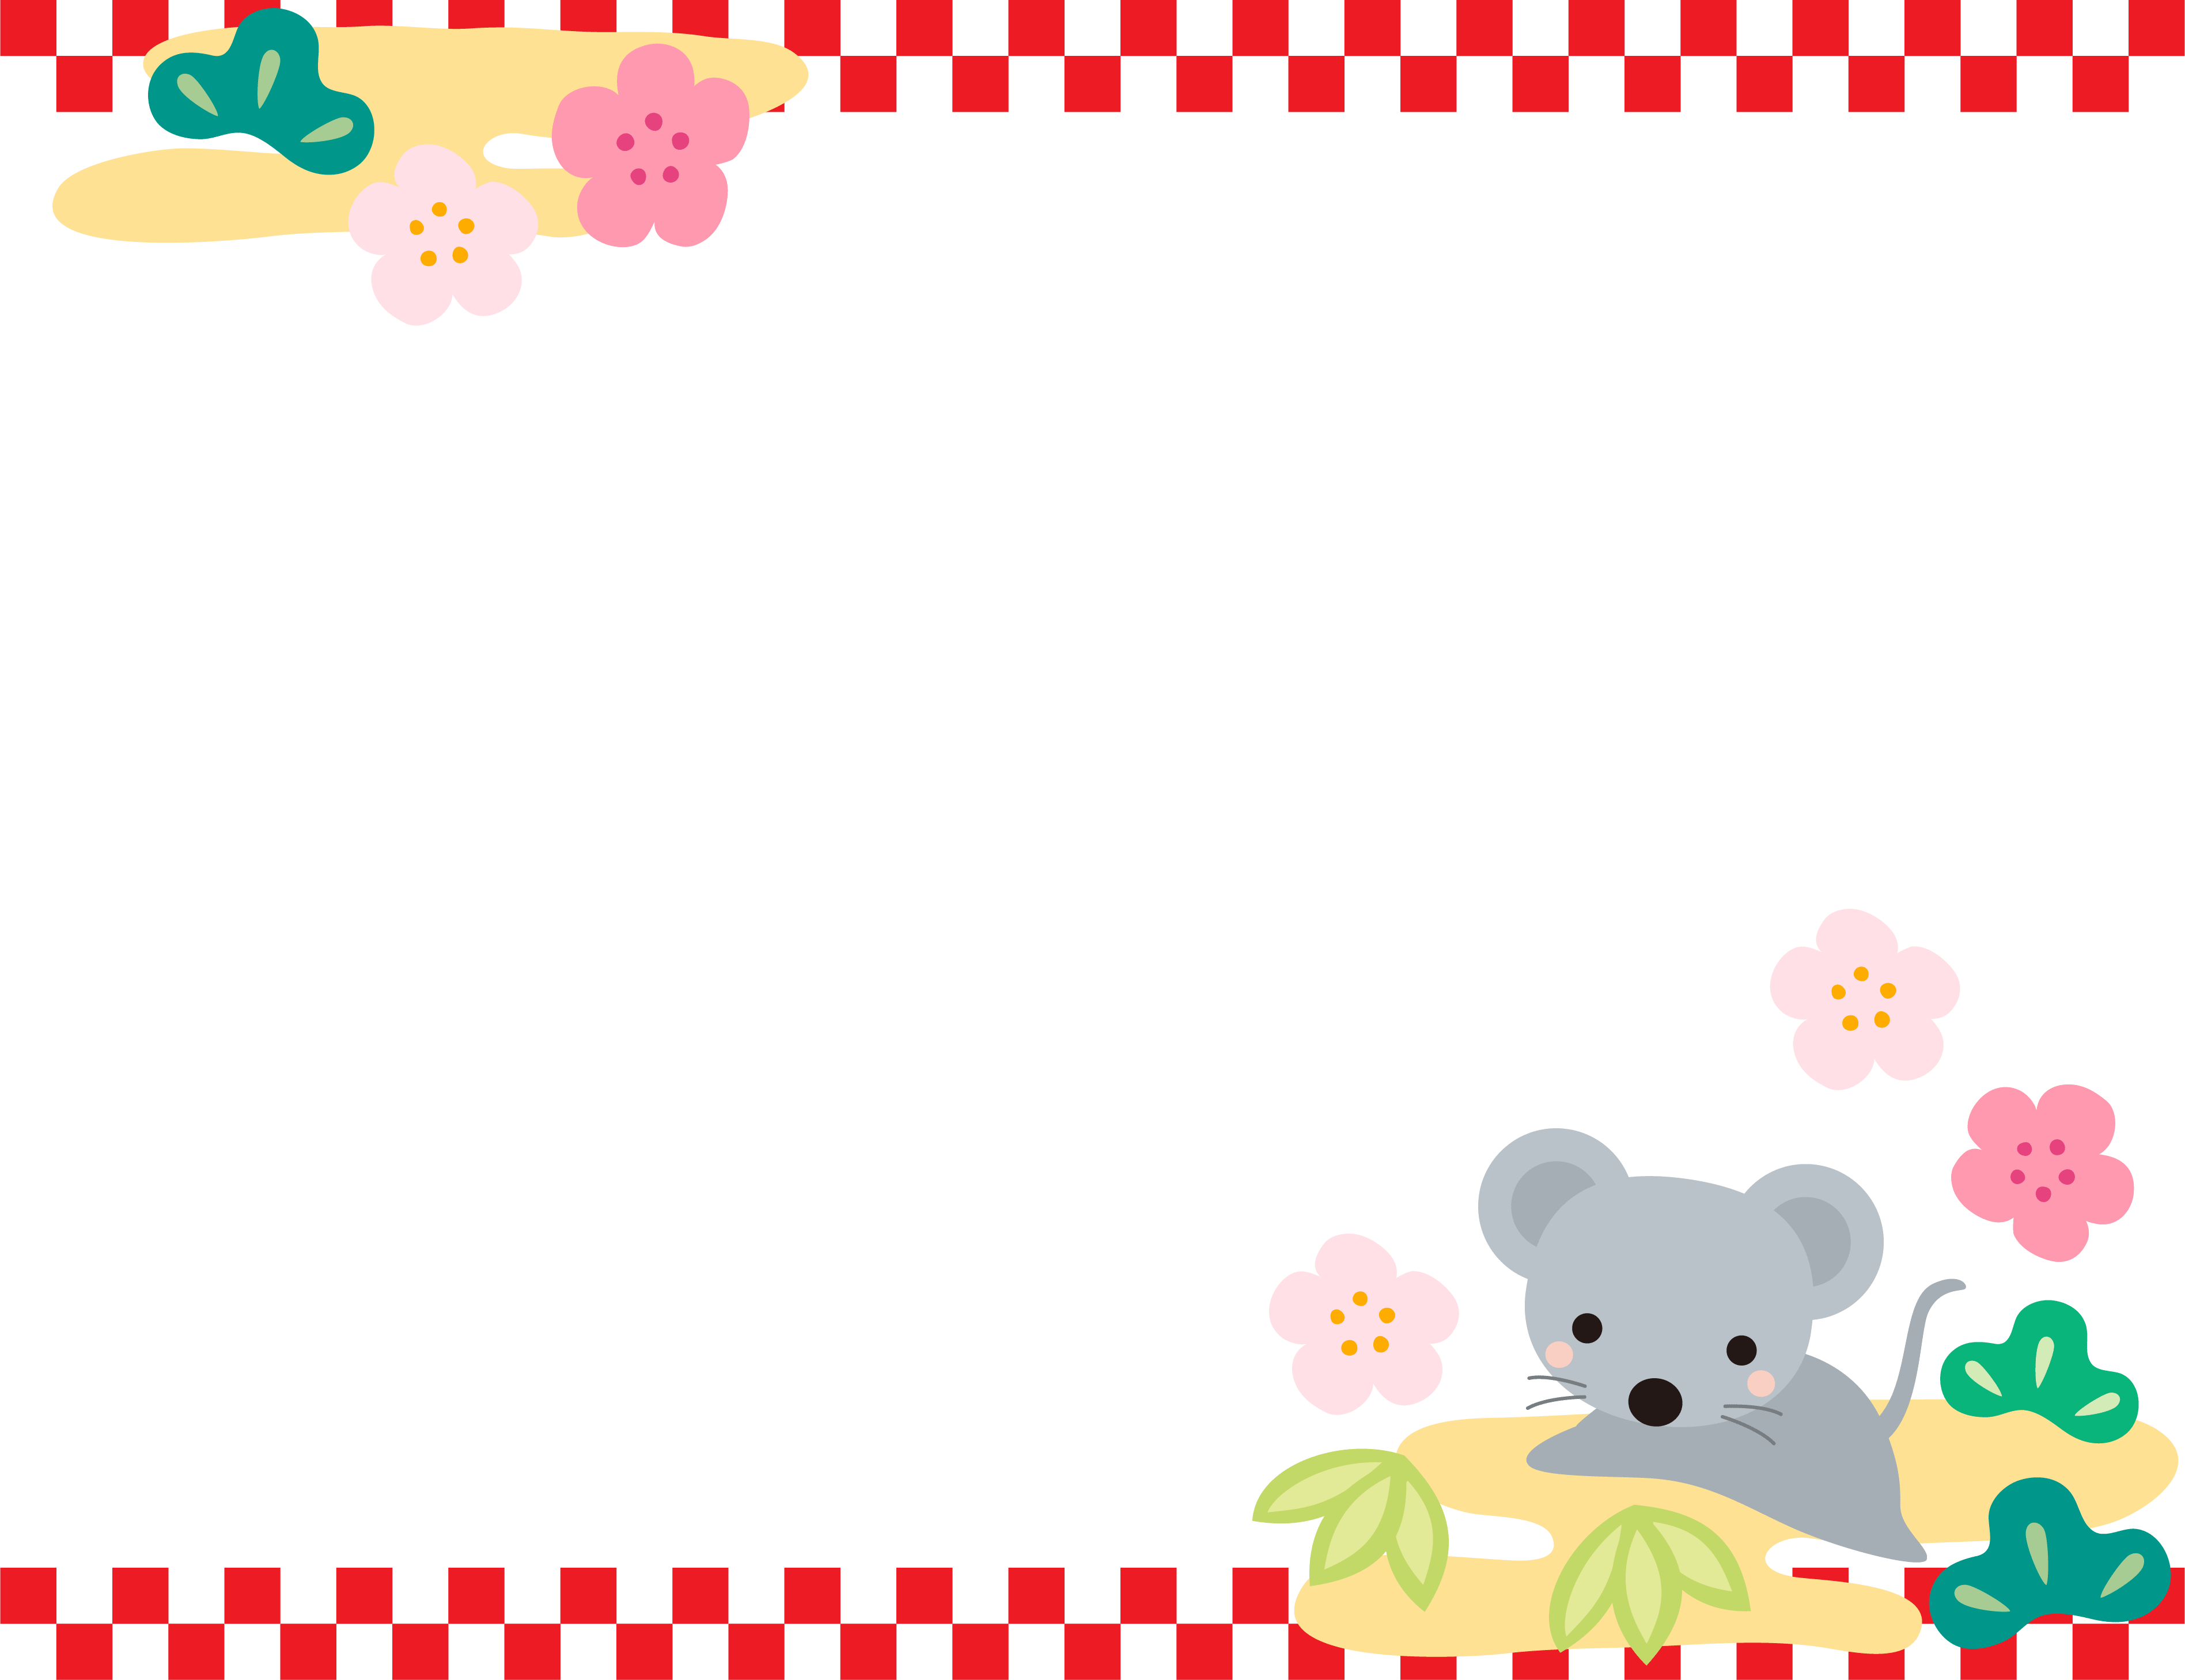 ネズミと松竹梅と上下の市松模様のお正月フレーム飾り枠